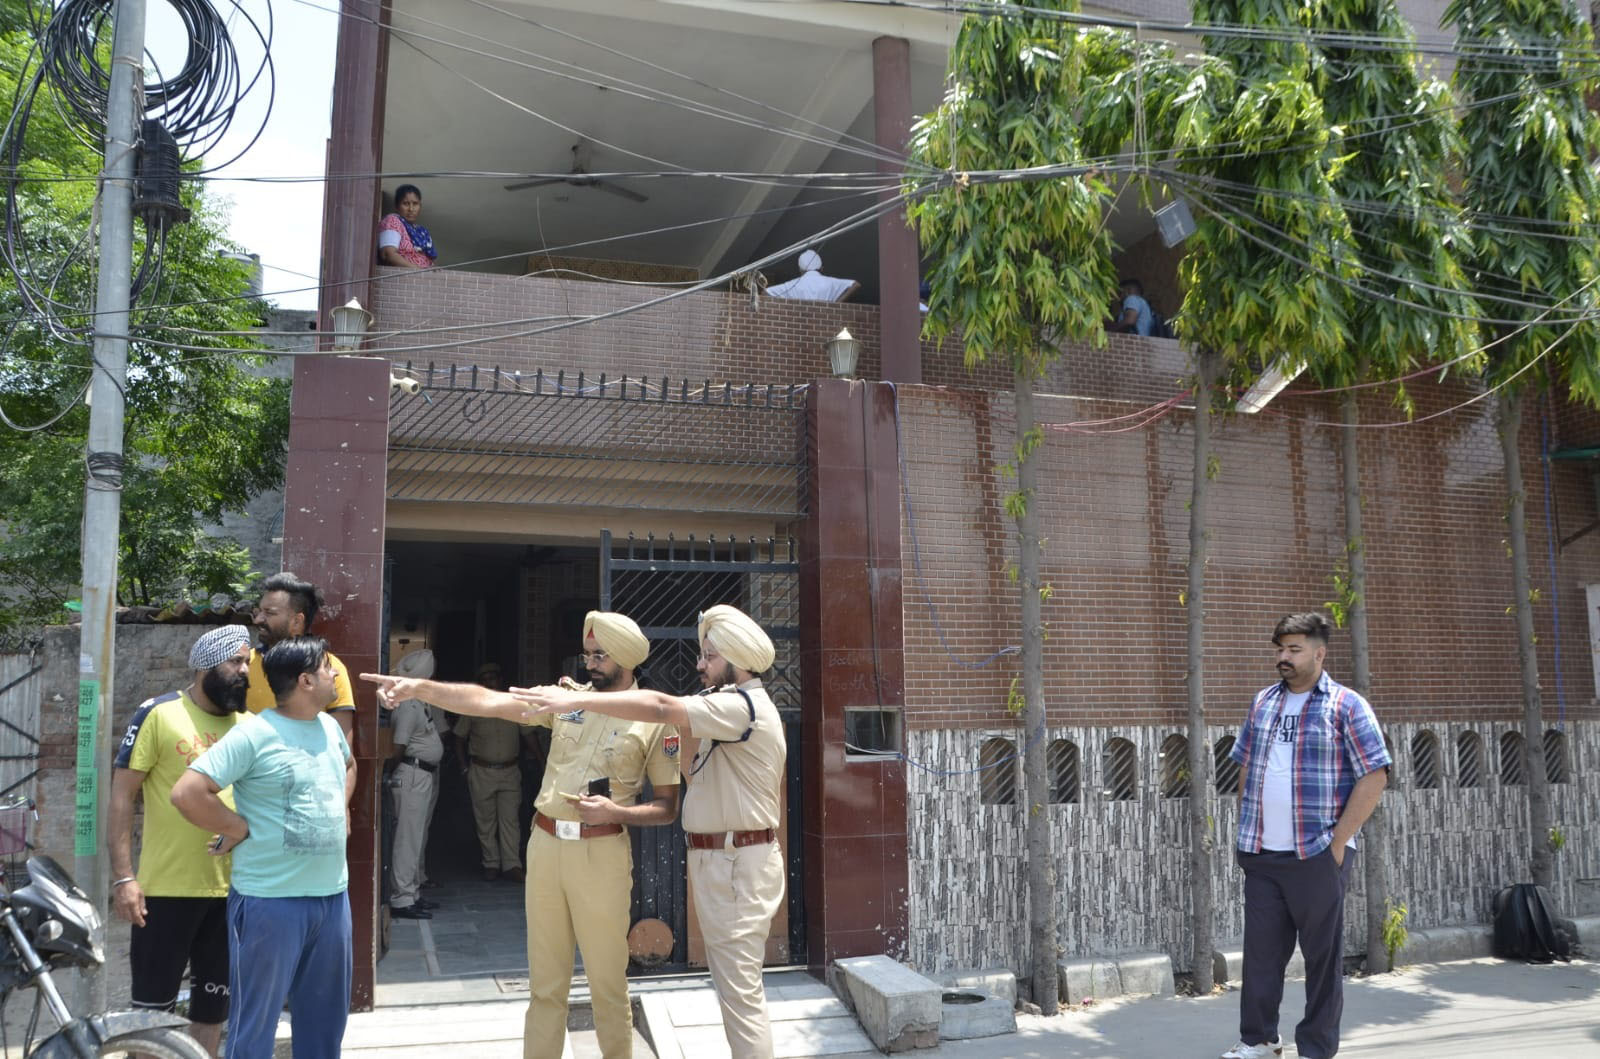 Ex-IAF officer, wife found murdered at GTB Nagar in Ludhiana